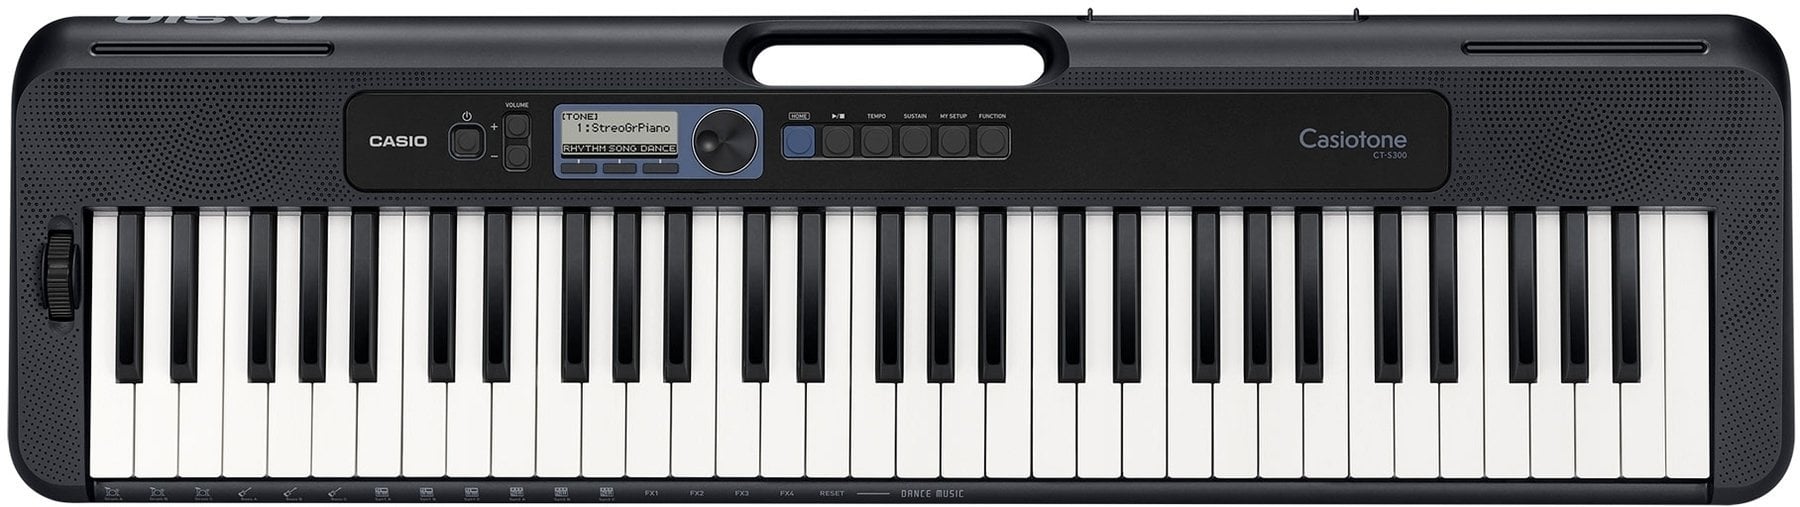 Keyboard met aanslaggevoeligheid Casio CT-S300